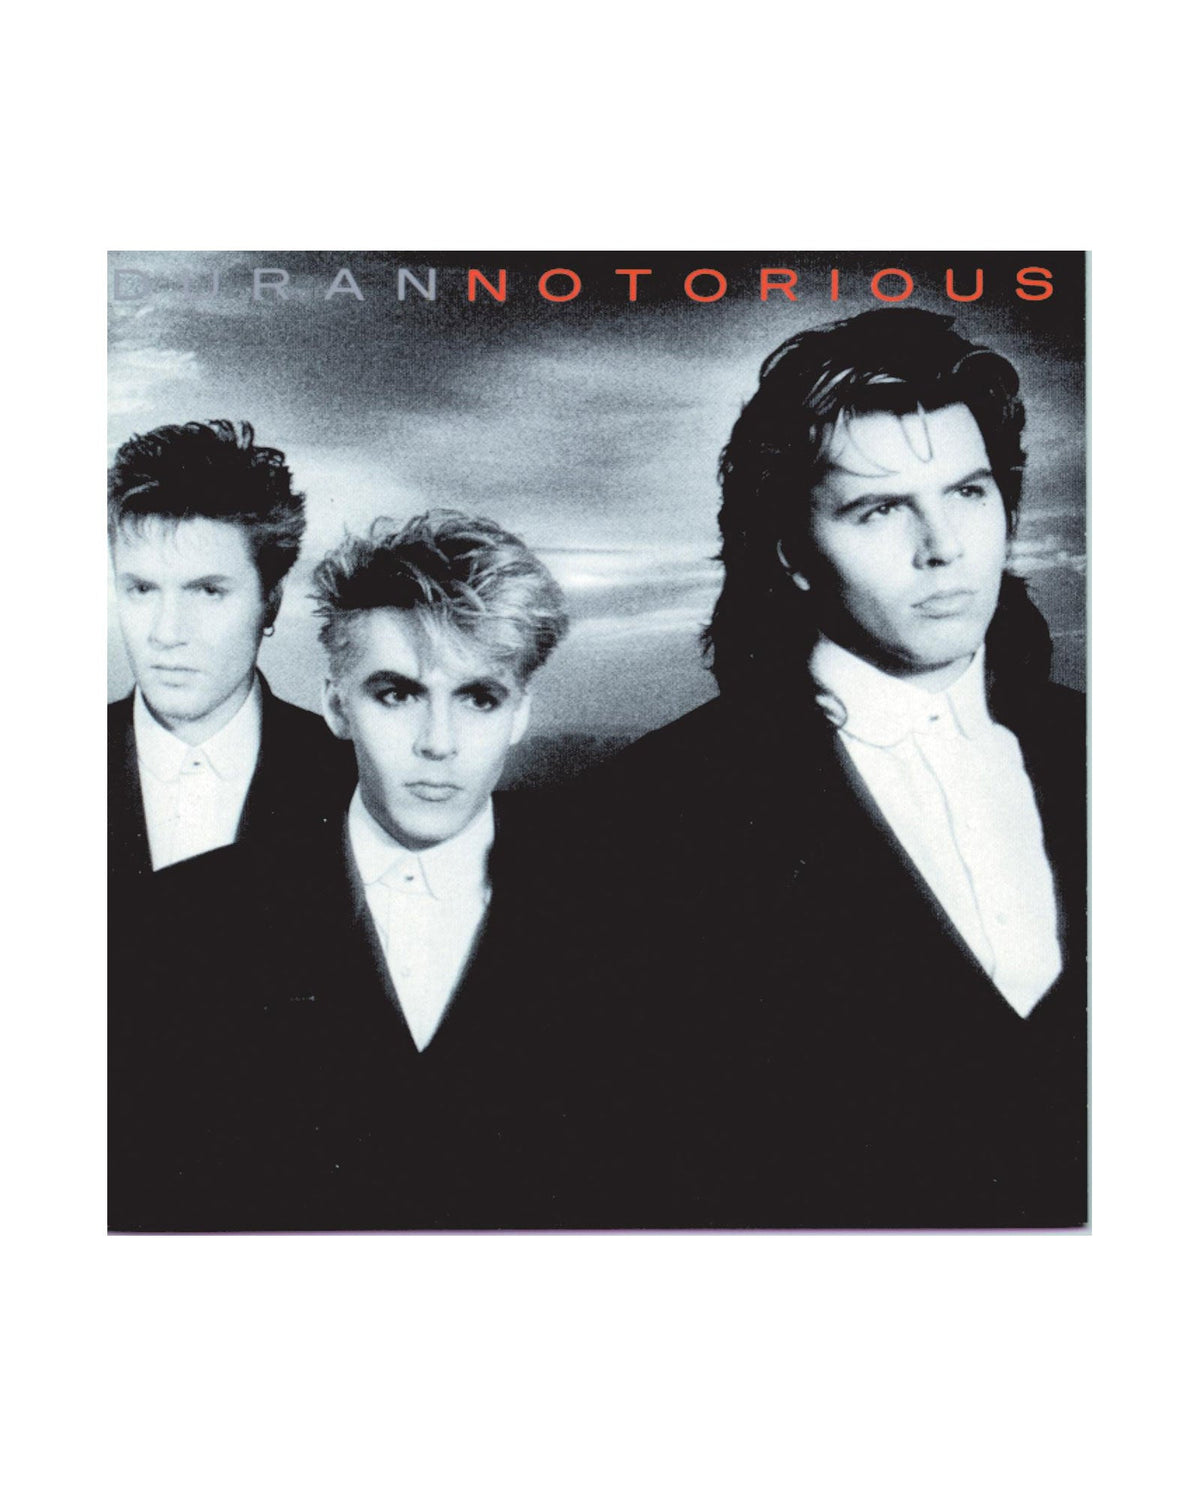 Duran Duran - LP Vinilo "Notorious" - D2fy · Rocktud - D2fy